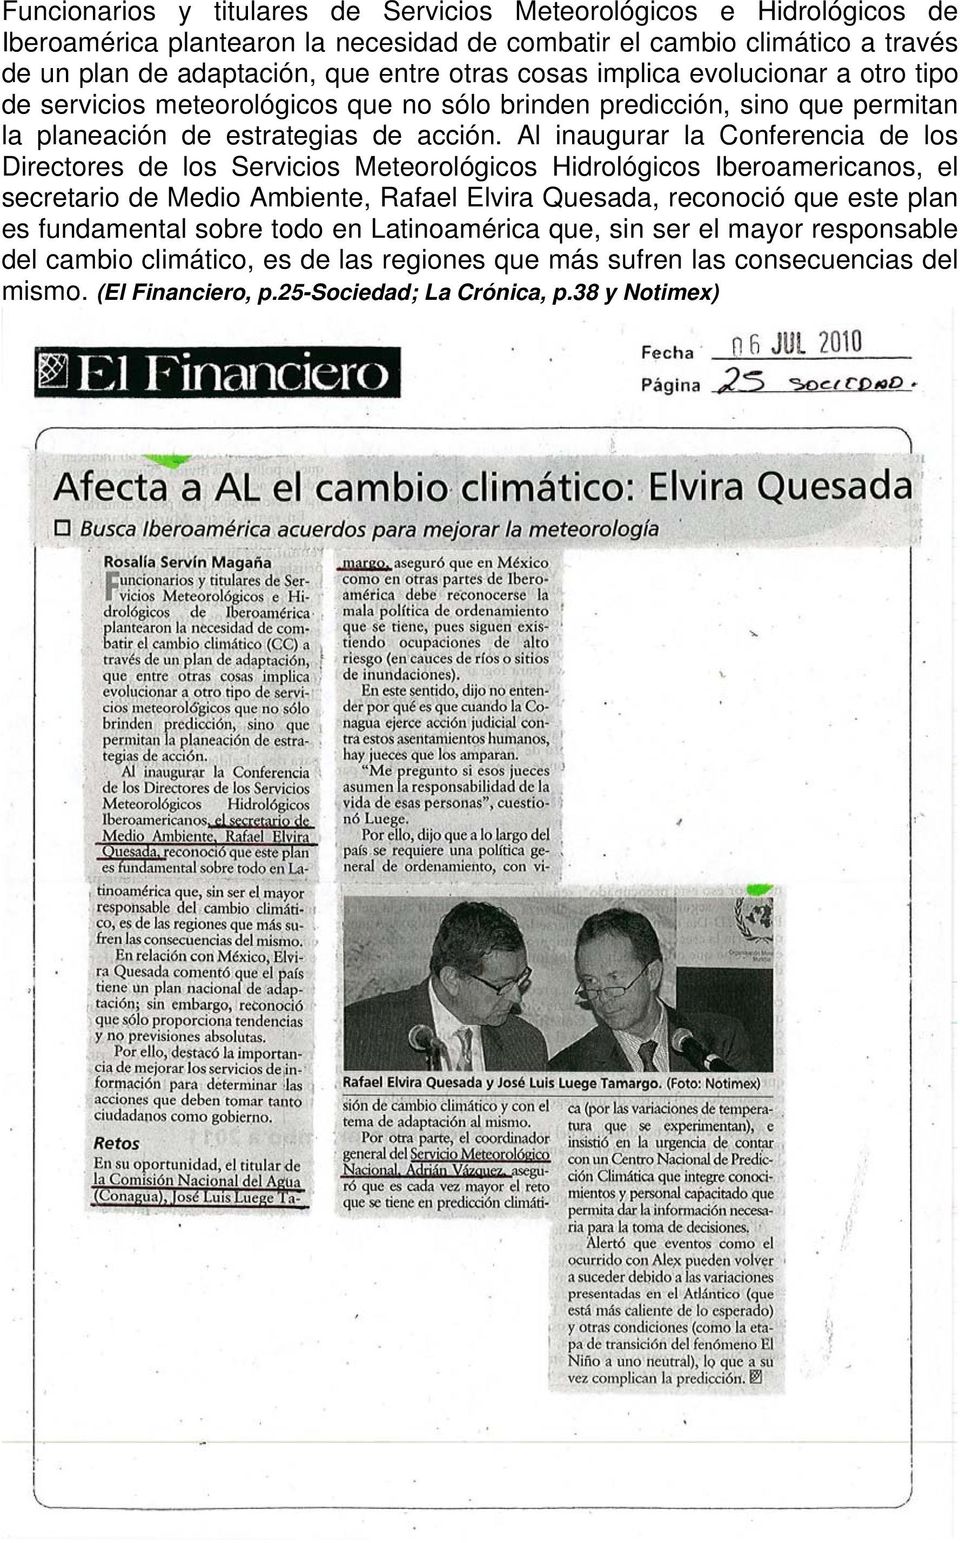 Al inaugurar la Conferencia de los Directores de los Servicios Meteorológicos Hidrológicos Iberoamericanos, el secretario de Medio Ambiente, Rafael Elvira Quesada, reconoció que este plan